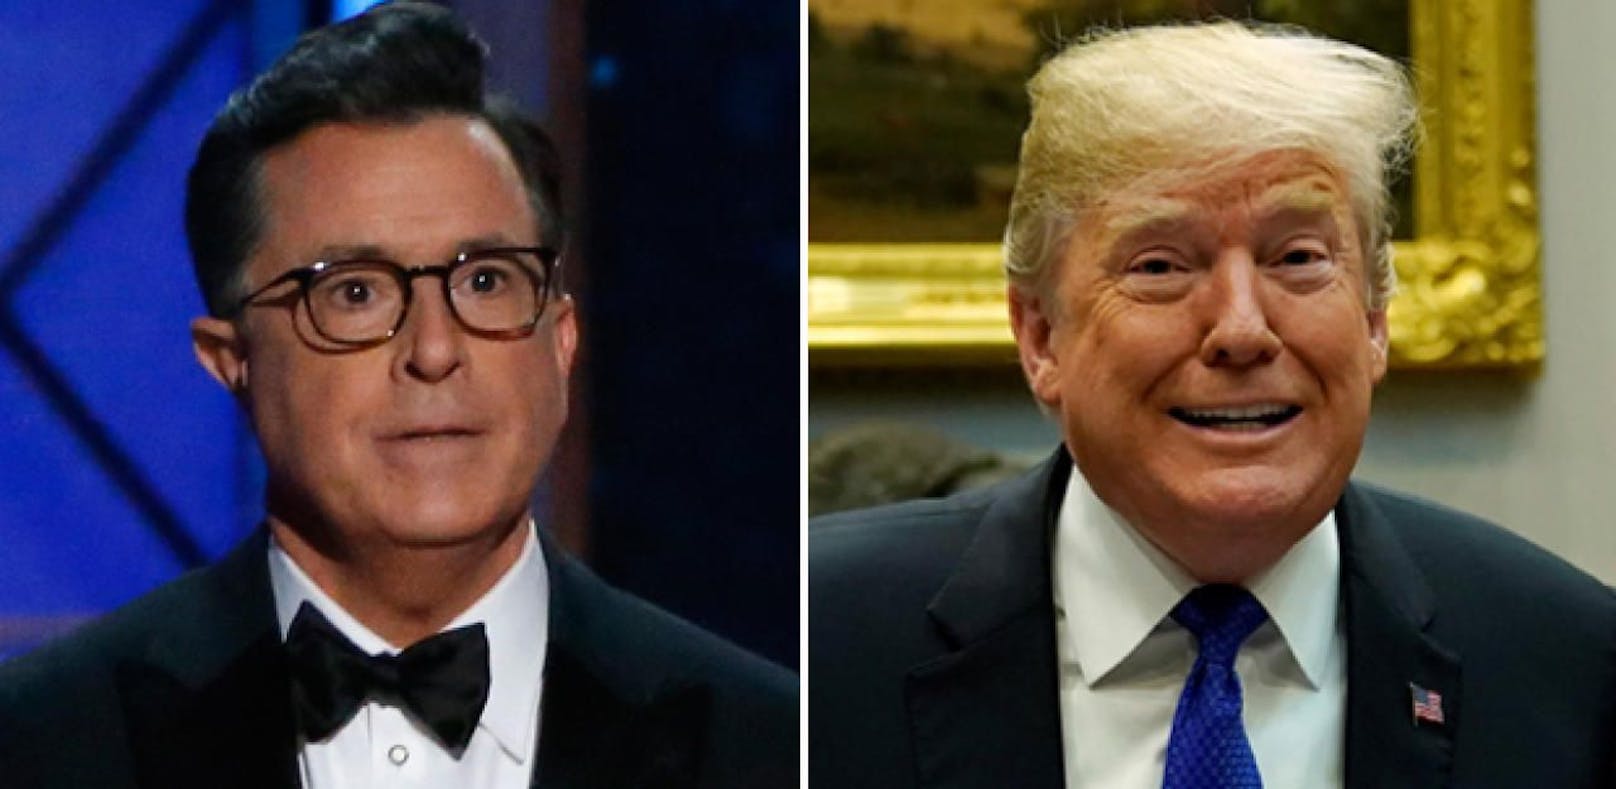 Stephen Colbert freut sich auf "Fake News Awards"